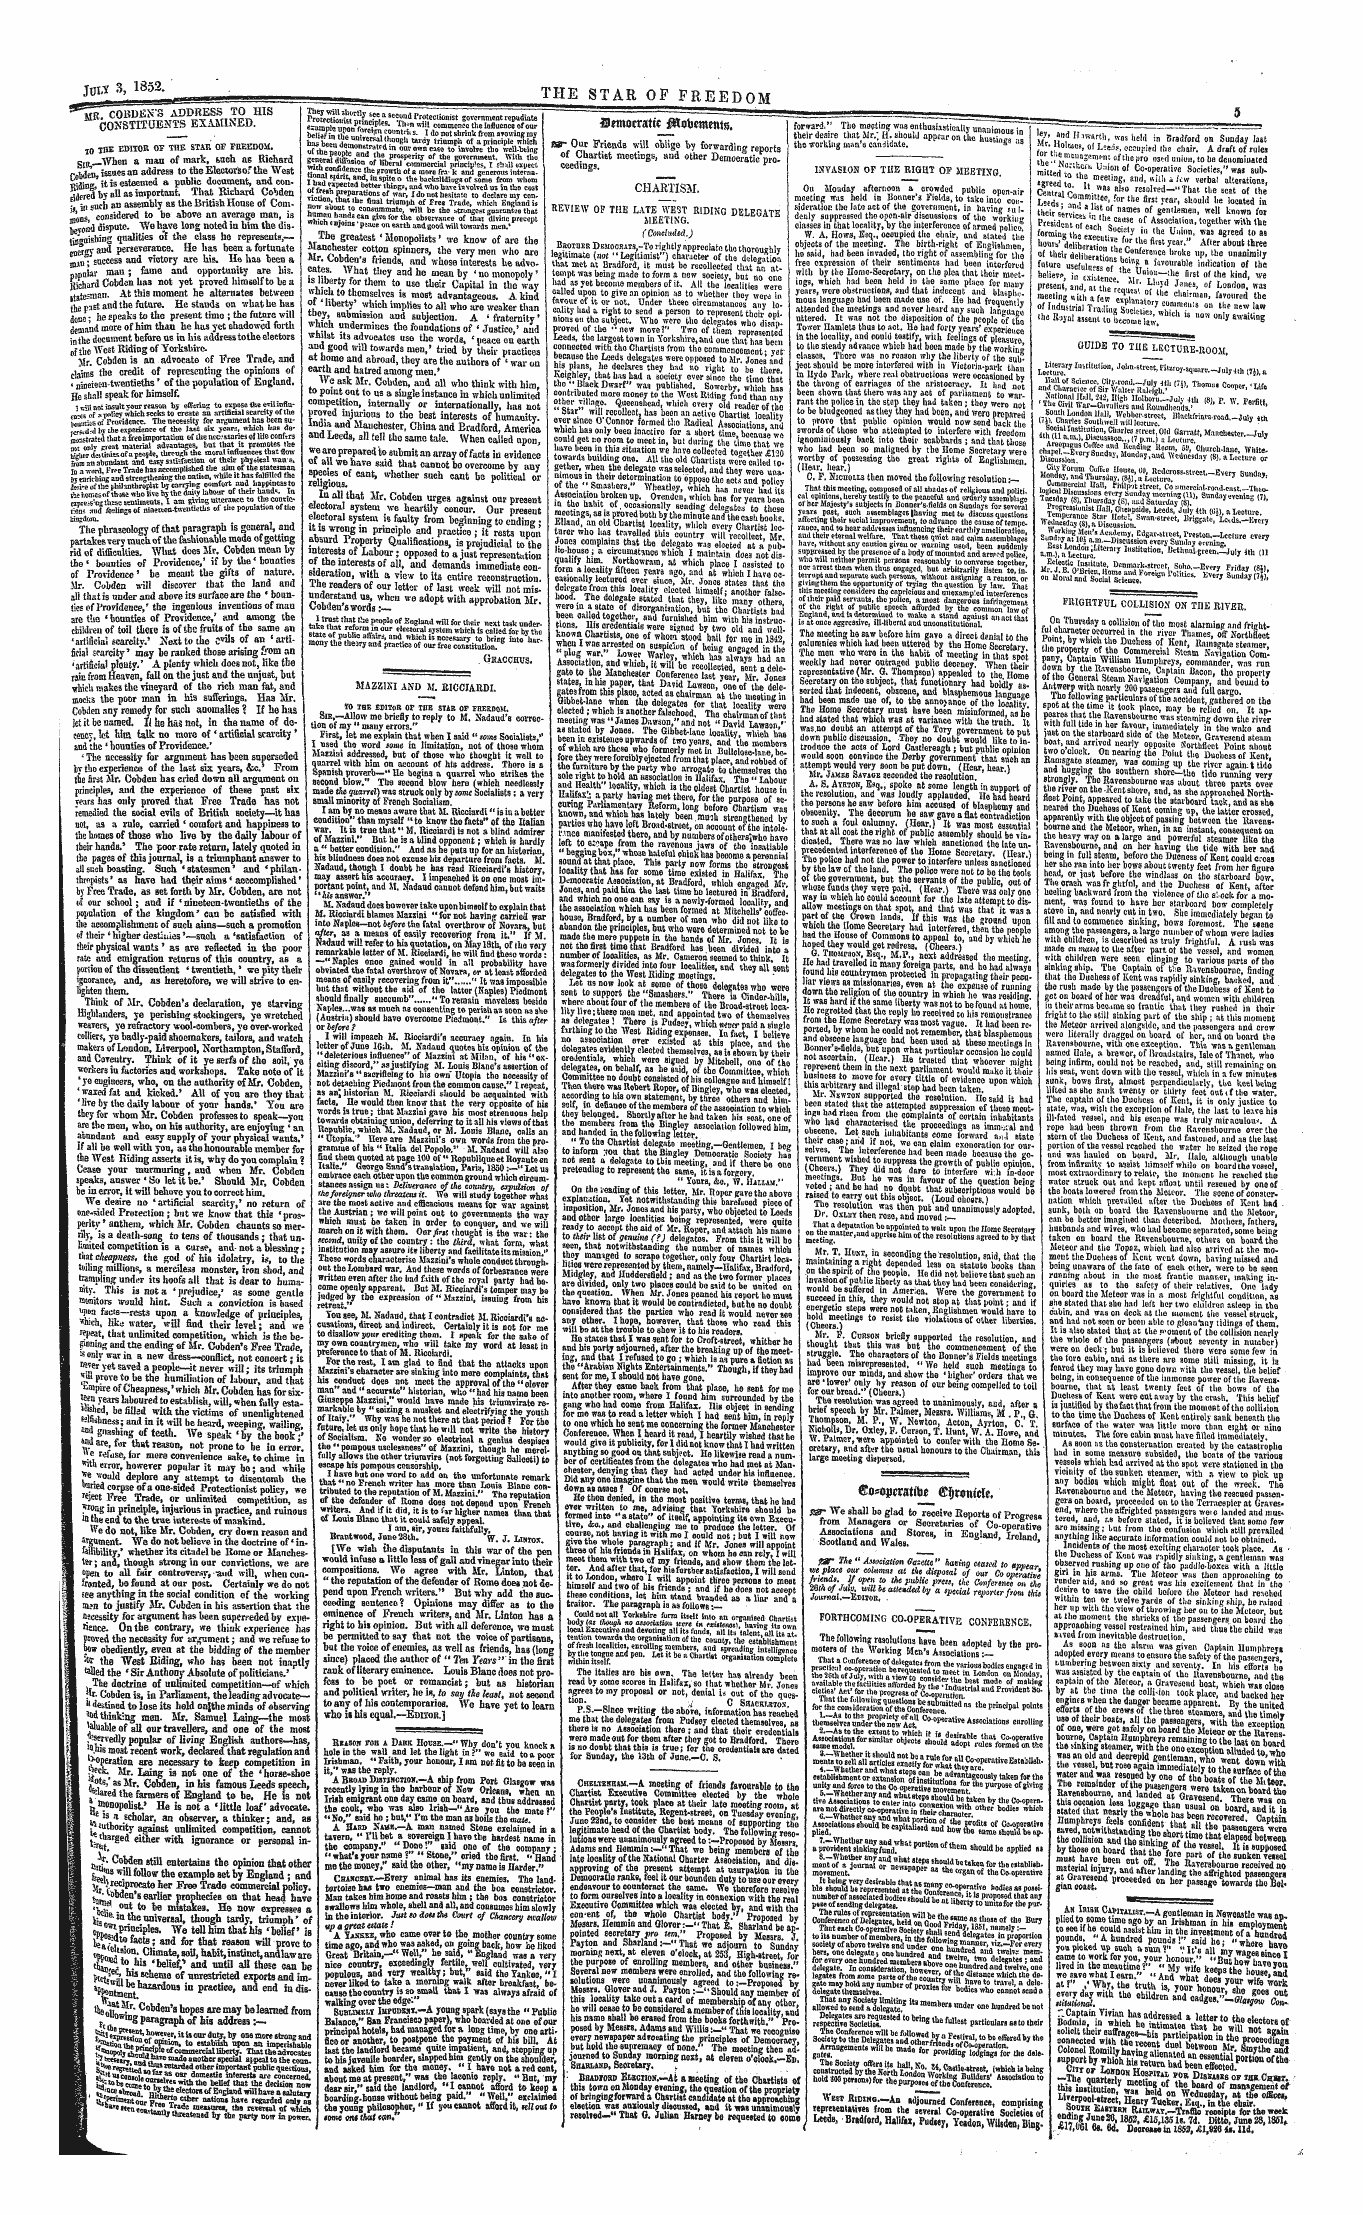 Northern Star (1837-1852): jS F Y, 1st edition - ©Oso Iwattb* Gfywviitu*